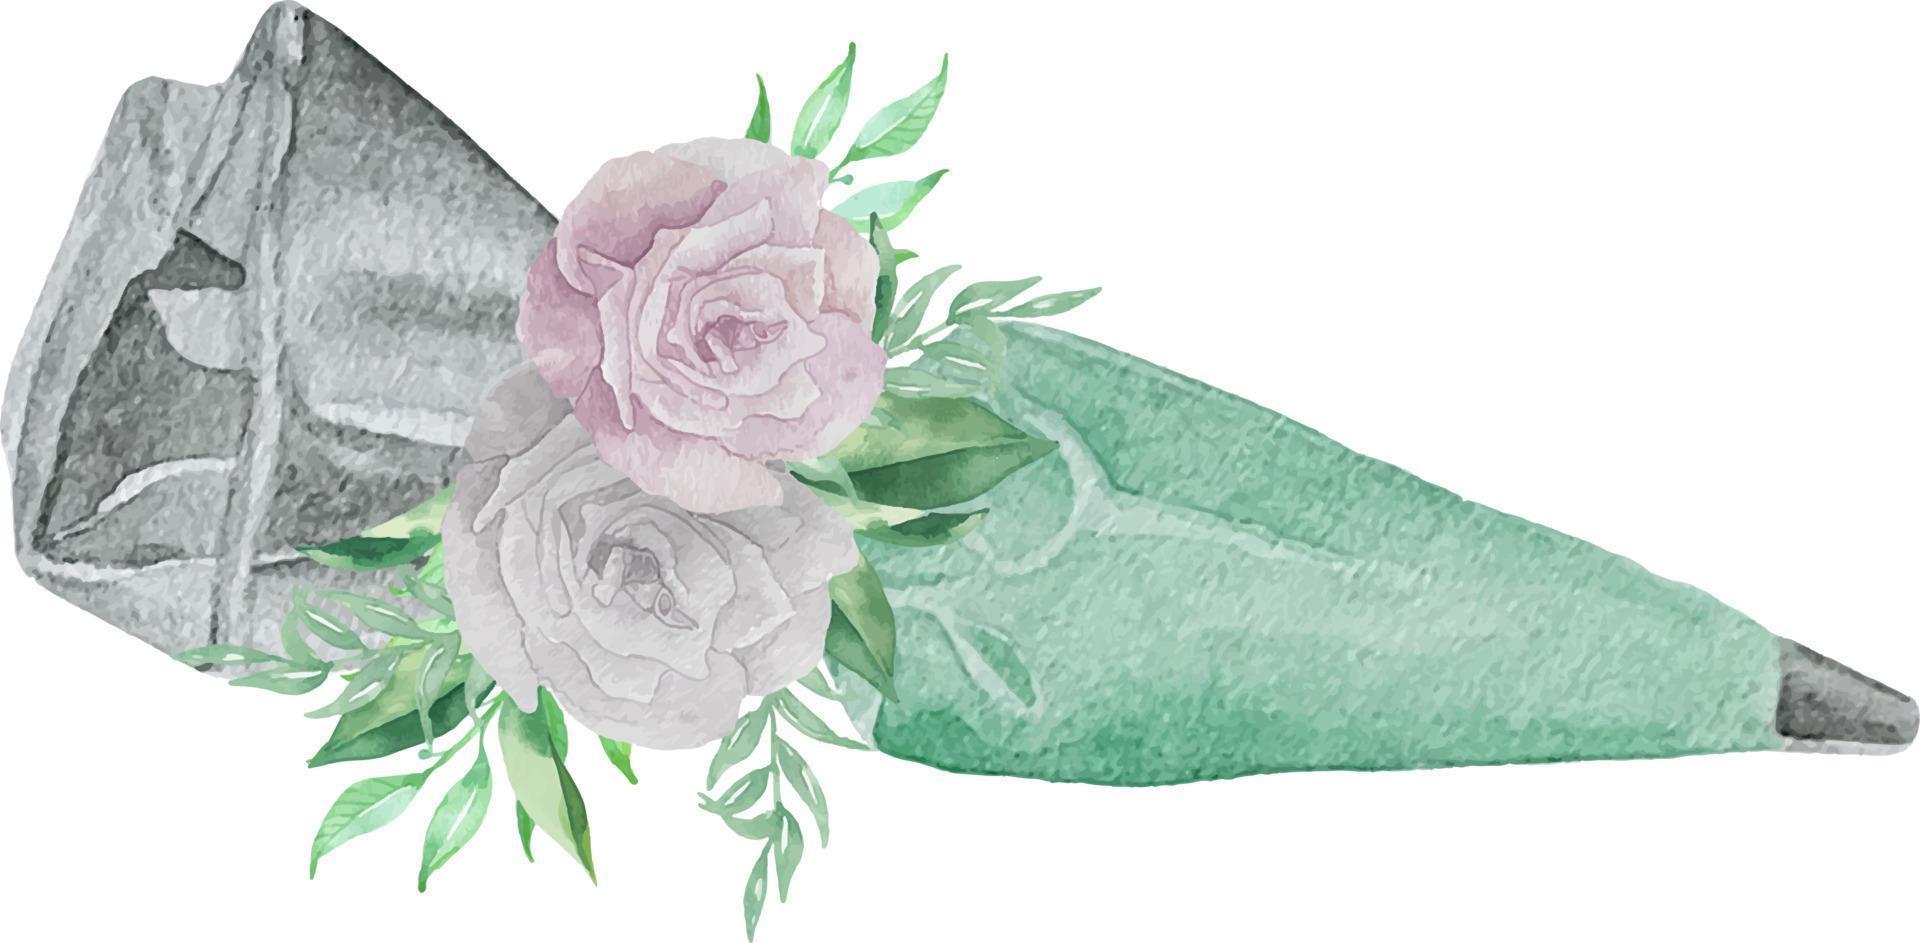 akvarellillustration av glasyrpåse och spets med mintturkos konditorivaror och blommor med grönska. bageri illustration för inbjudan, bakverk, meny, logotyper vektor